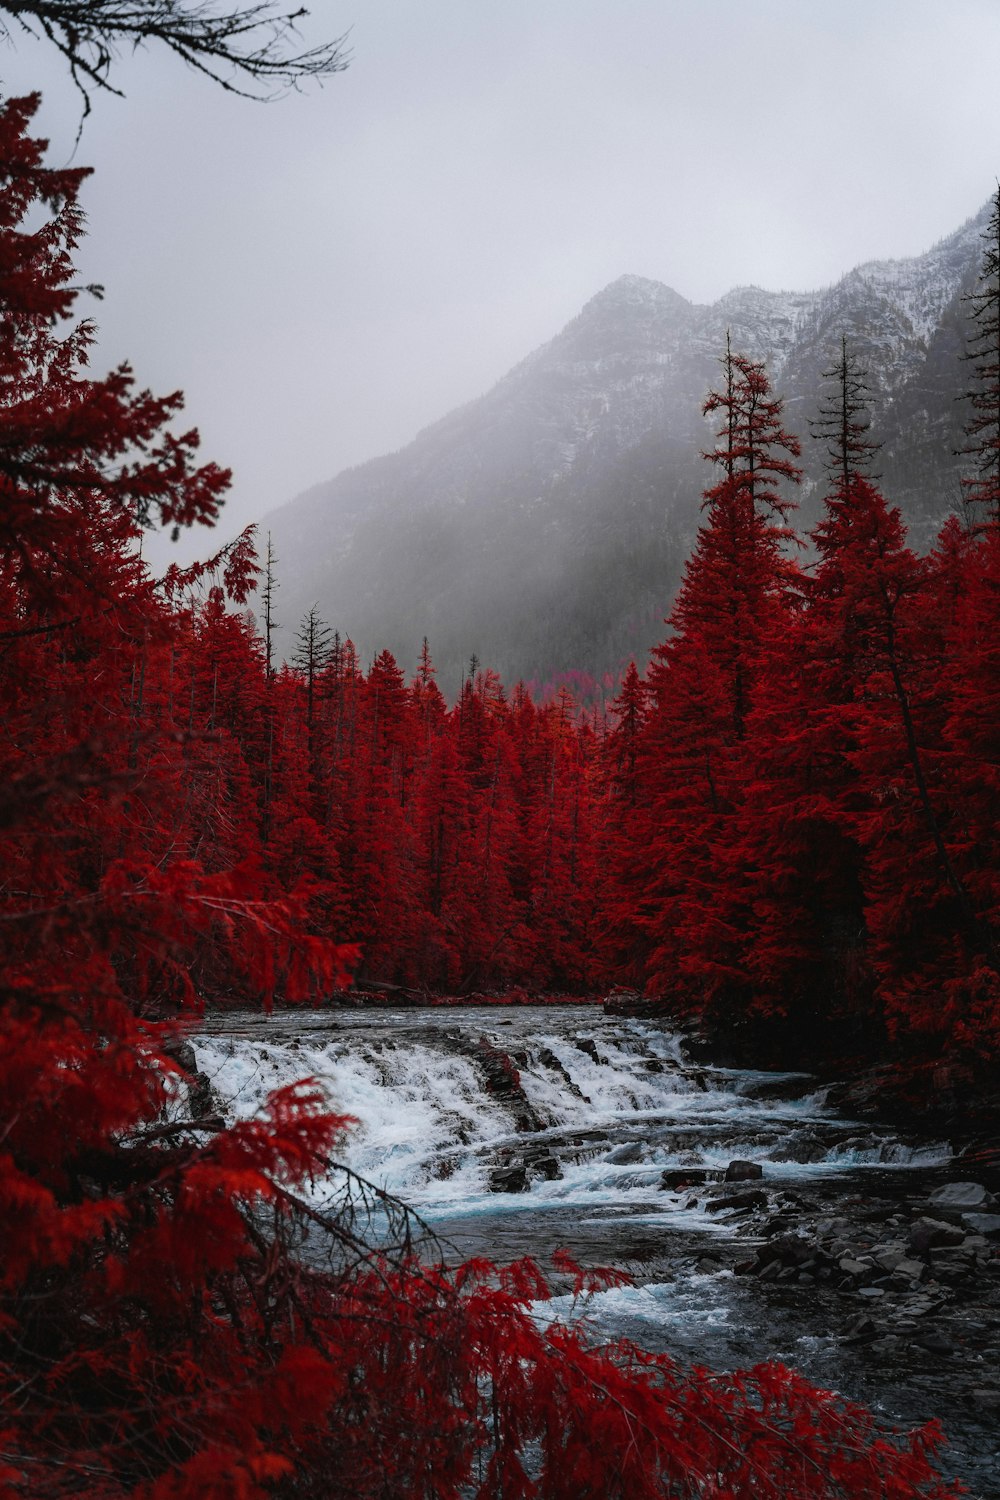 cachoeiras do rio perto de árvores vermelhas